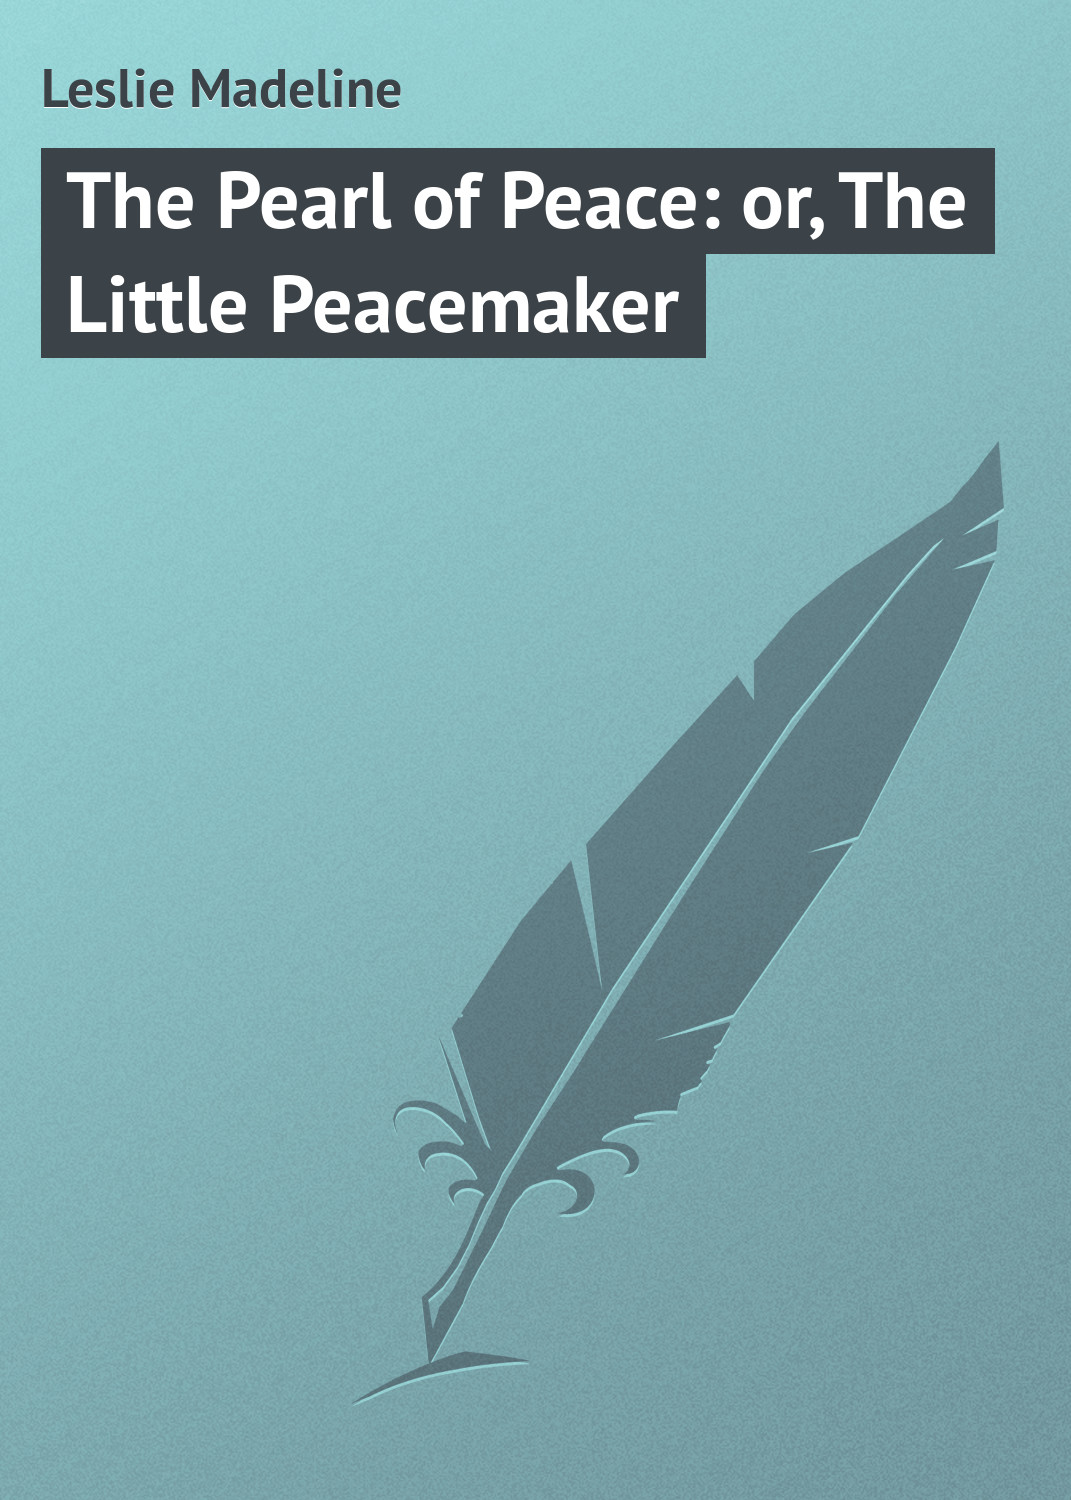 Книга The Pearl of Peace: or, The Little Peacemaker из серии , созданная Madeline Leslie, может относится к жанру Зарубежная классика, Зарубежные детские книги. Стоимость электронной книги The Pearl of Peace: or, The Little Peacemaker с идентификатором 23144747 составляет 5.99 руб.